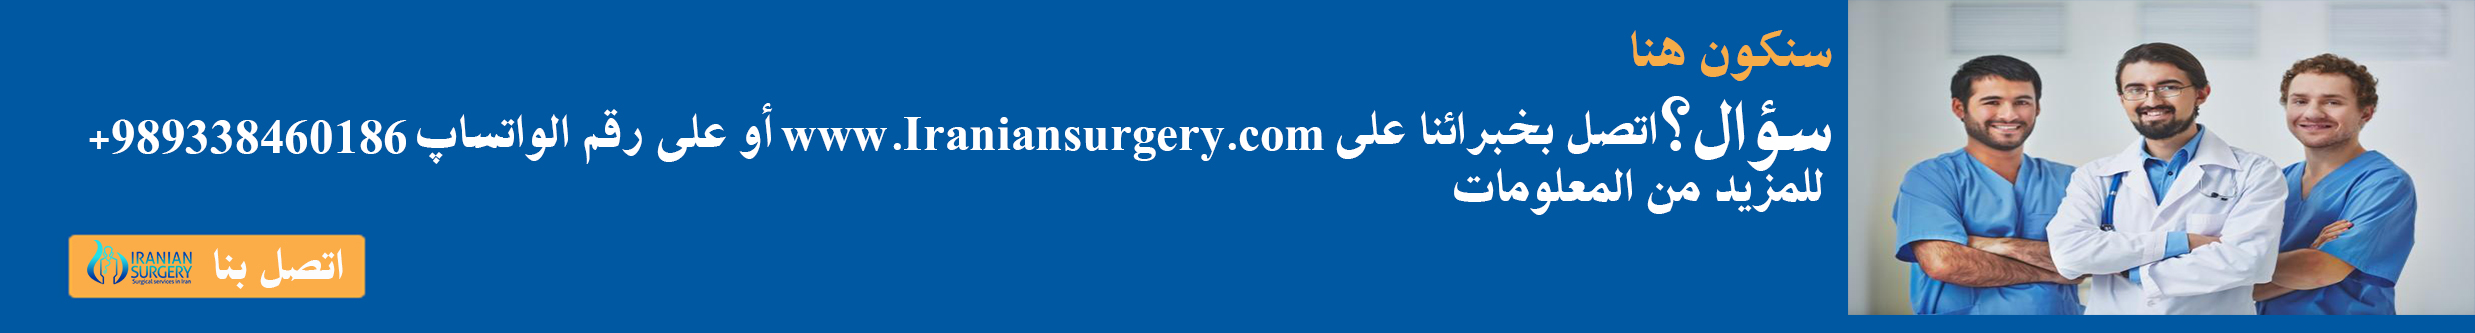 iranian surgery